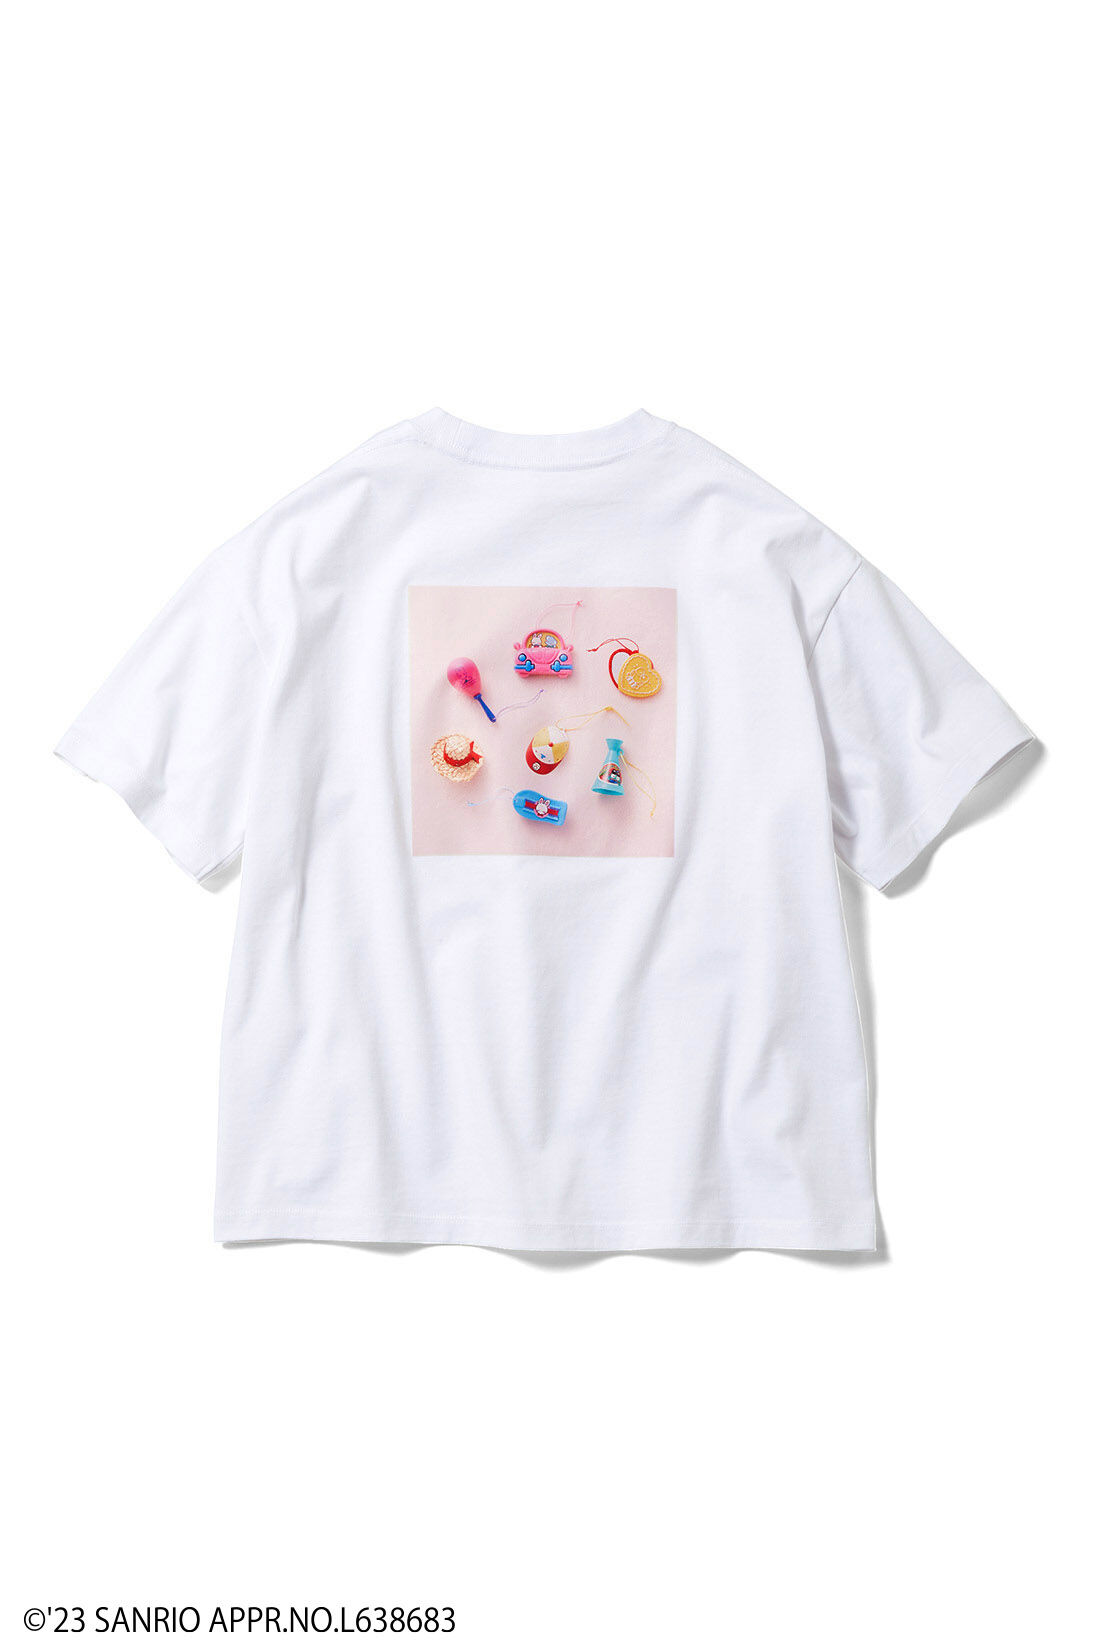 シロップ．|サンリオキャラクターコラボ あのころの宝物 プレミアムマスコットTシャツ